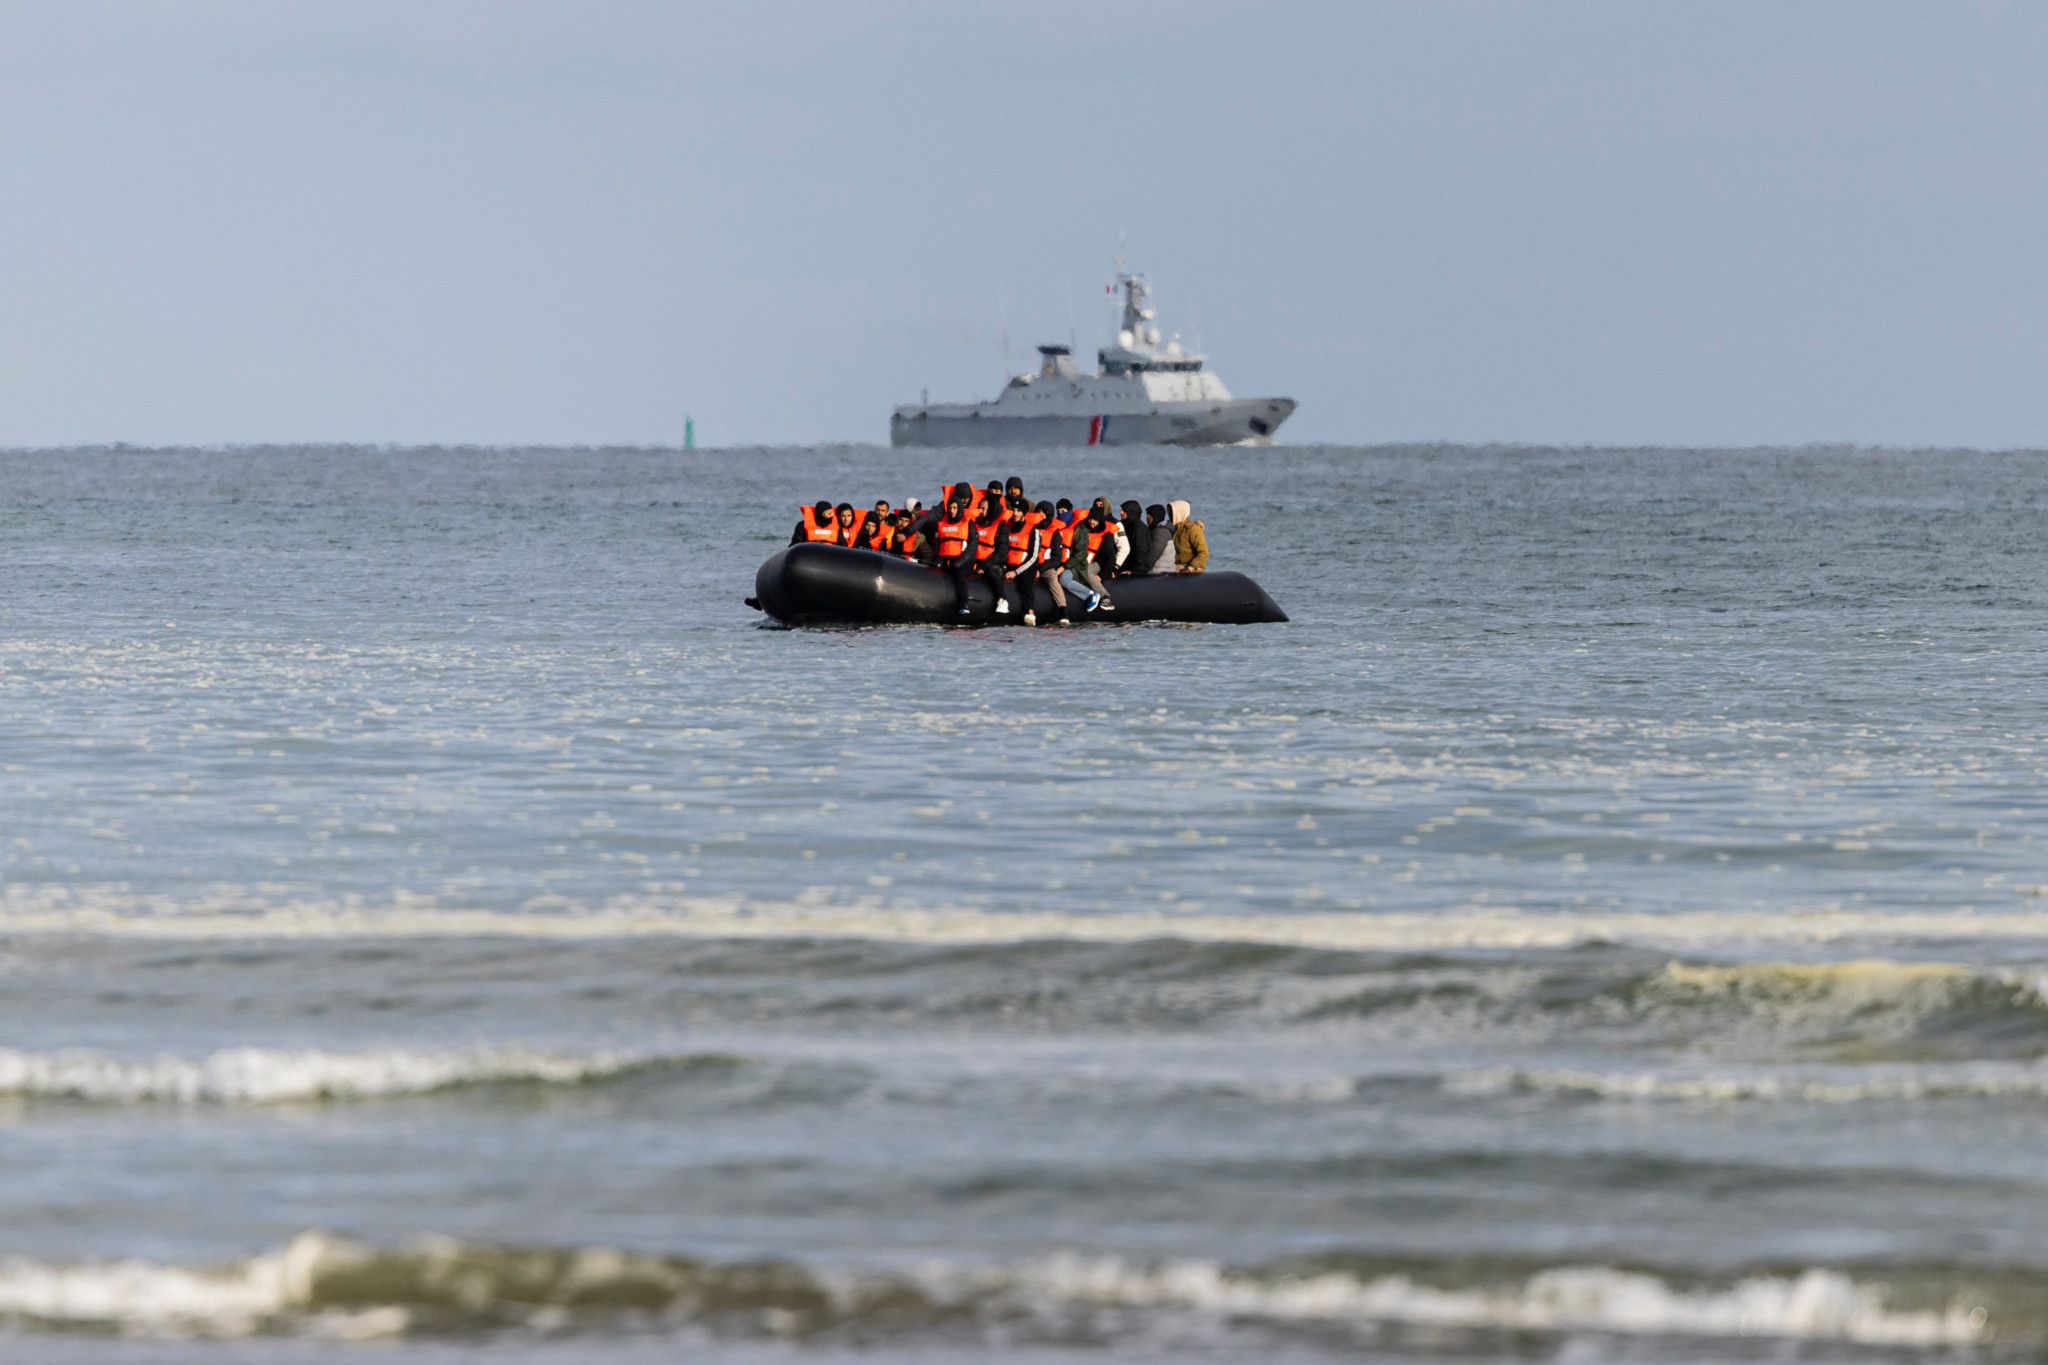 Plus de 150 migrants secourus dans la Manche